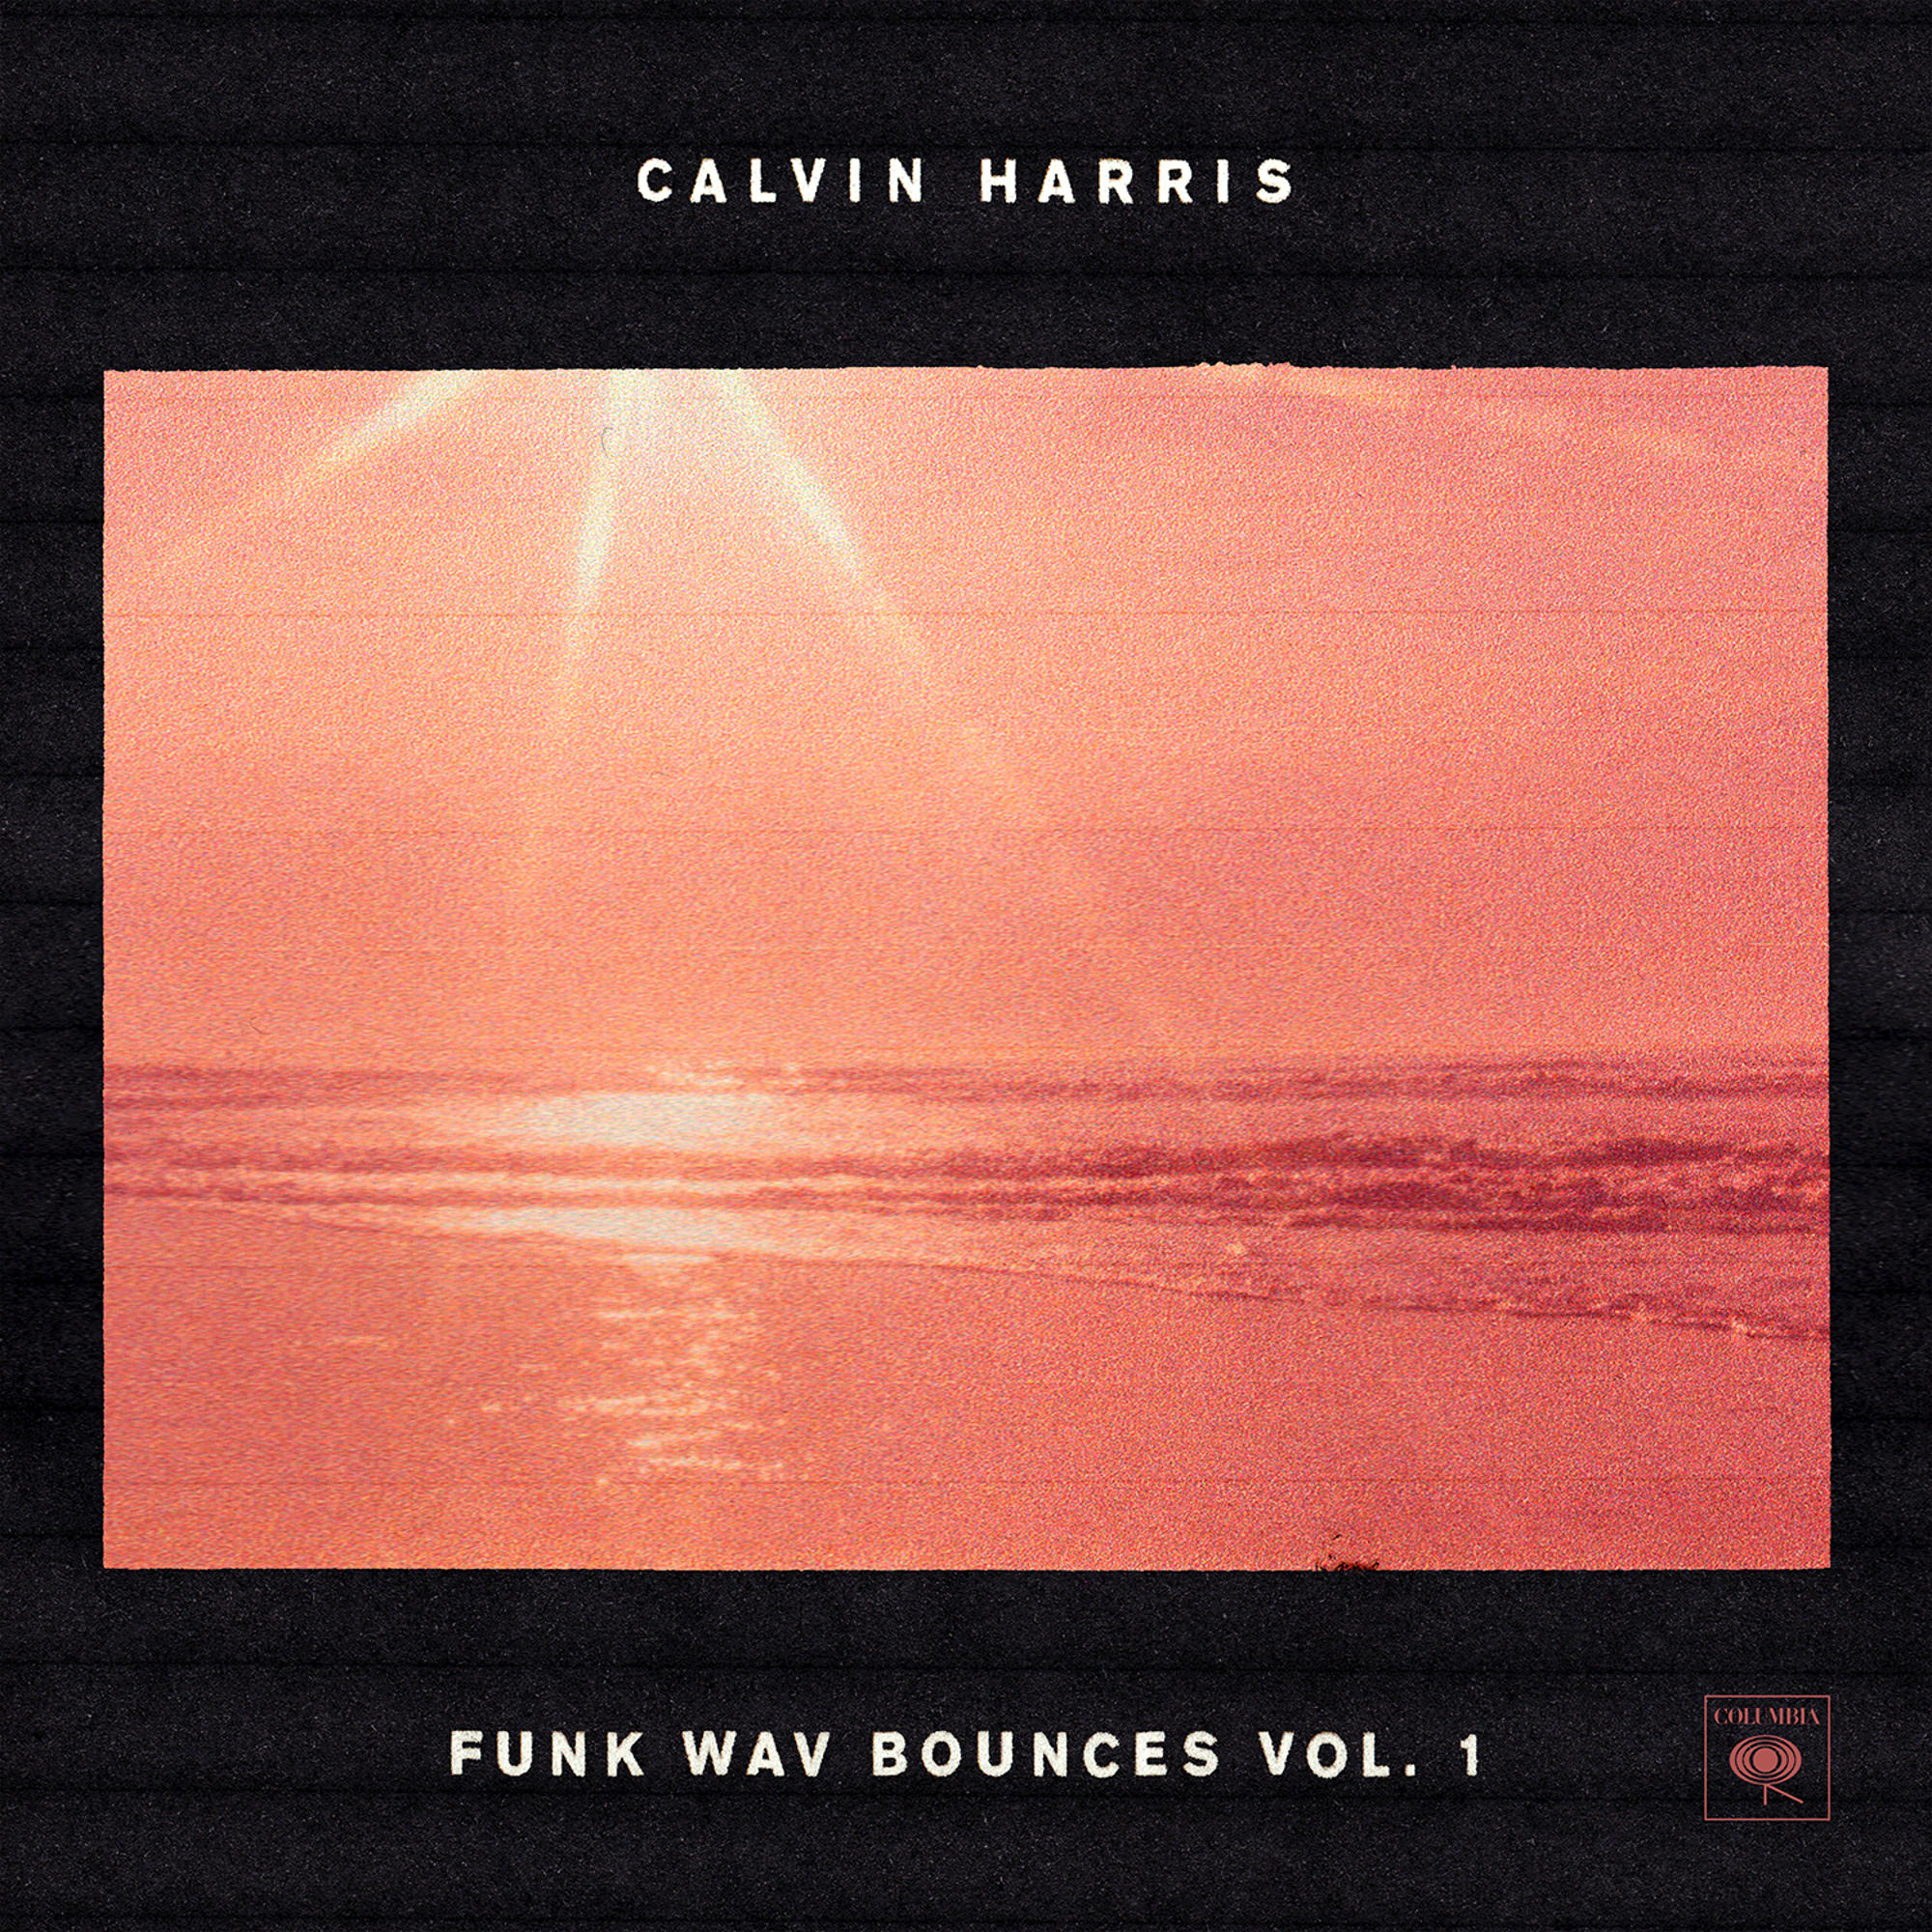 (CD) Bounces Vol.1 Harris Wav - Calvin Funk -